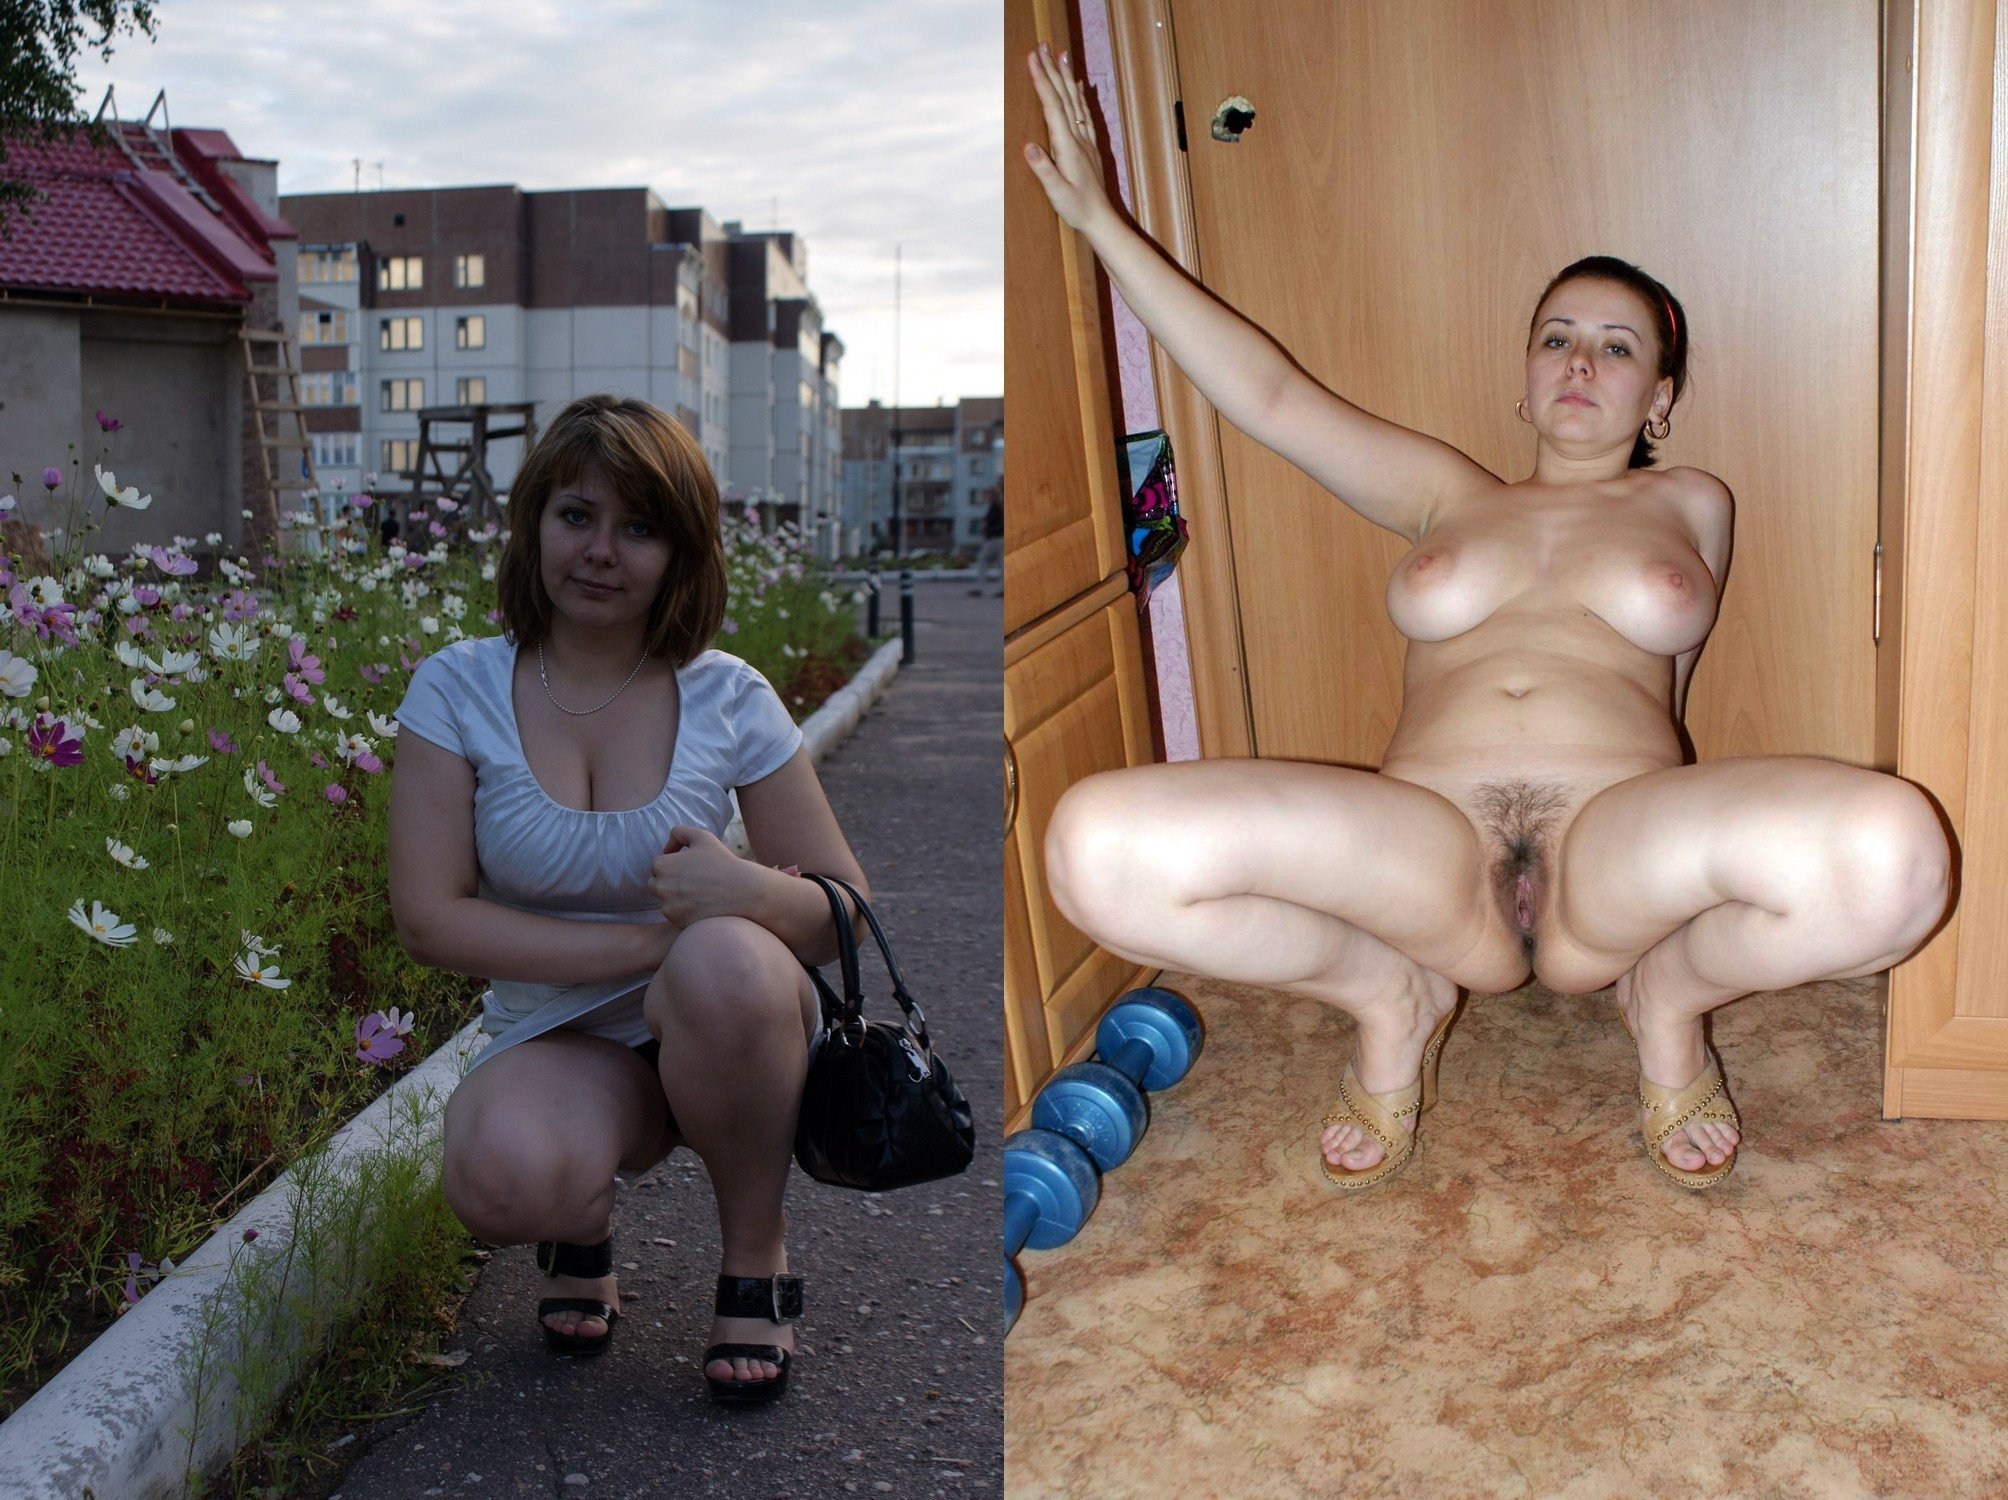 https://motherlesspics.com/uploads/posts/2023-03/1678710968_motherlesspics-com-p-porn-naked-women-undress-fat-take-off-thei-56.jpg